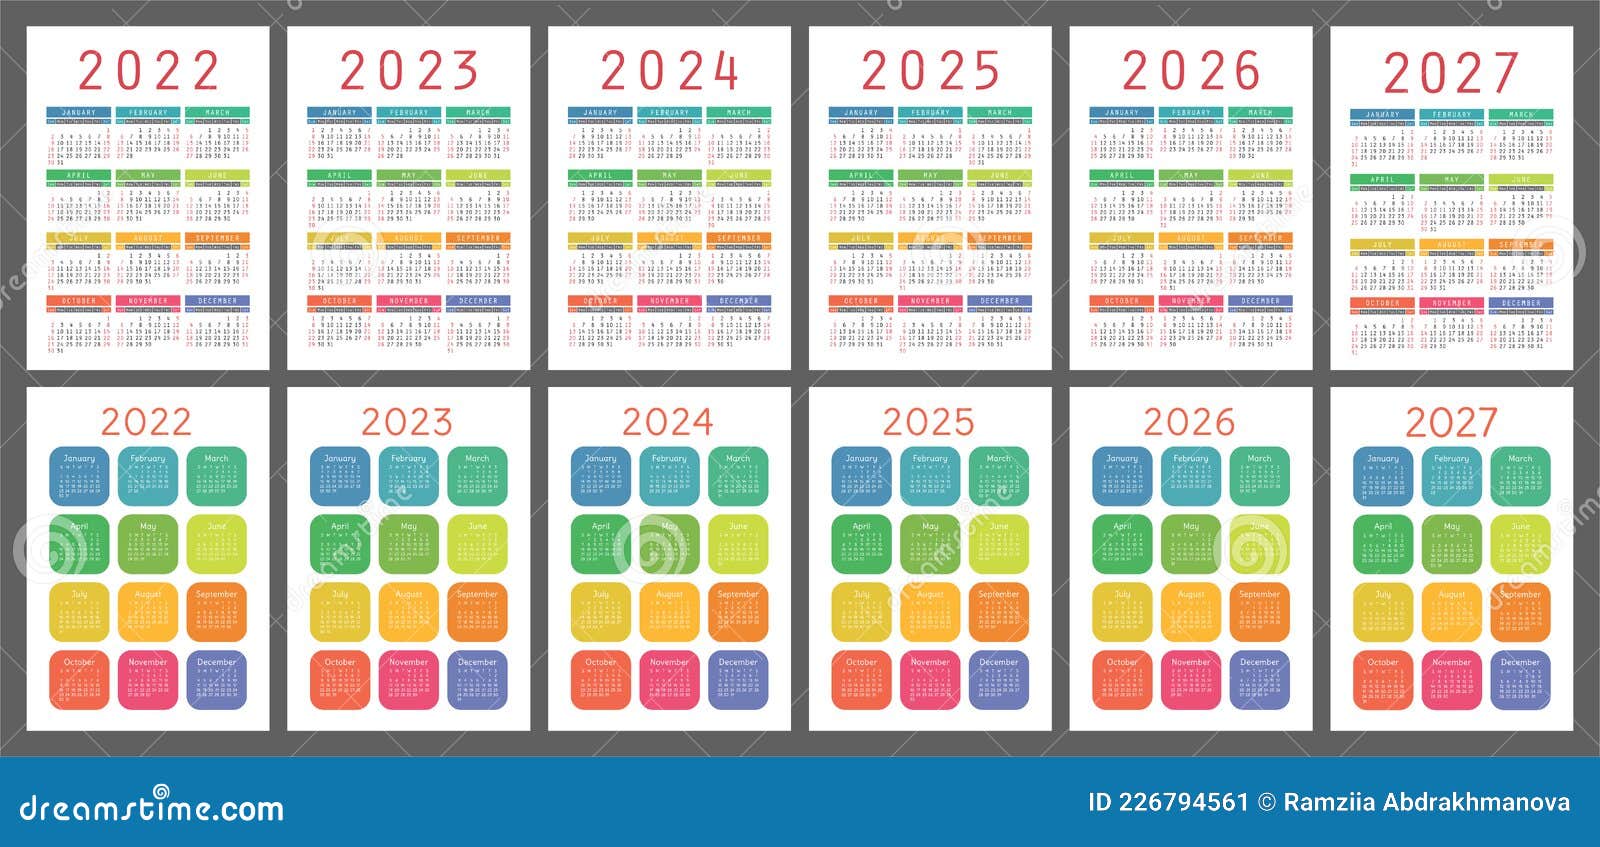 Знаменательные даты 2024 2025. Календарь 2022-2025. Календарь 2022 2023 2024. Календарь на 2024-2025 год. Календарь 2022-2024 год.